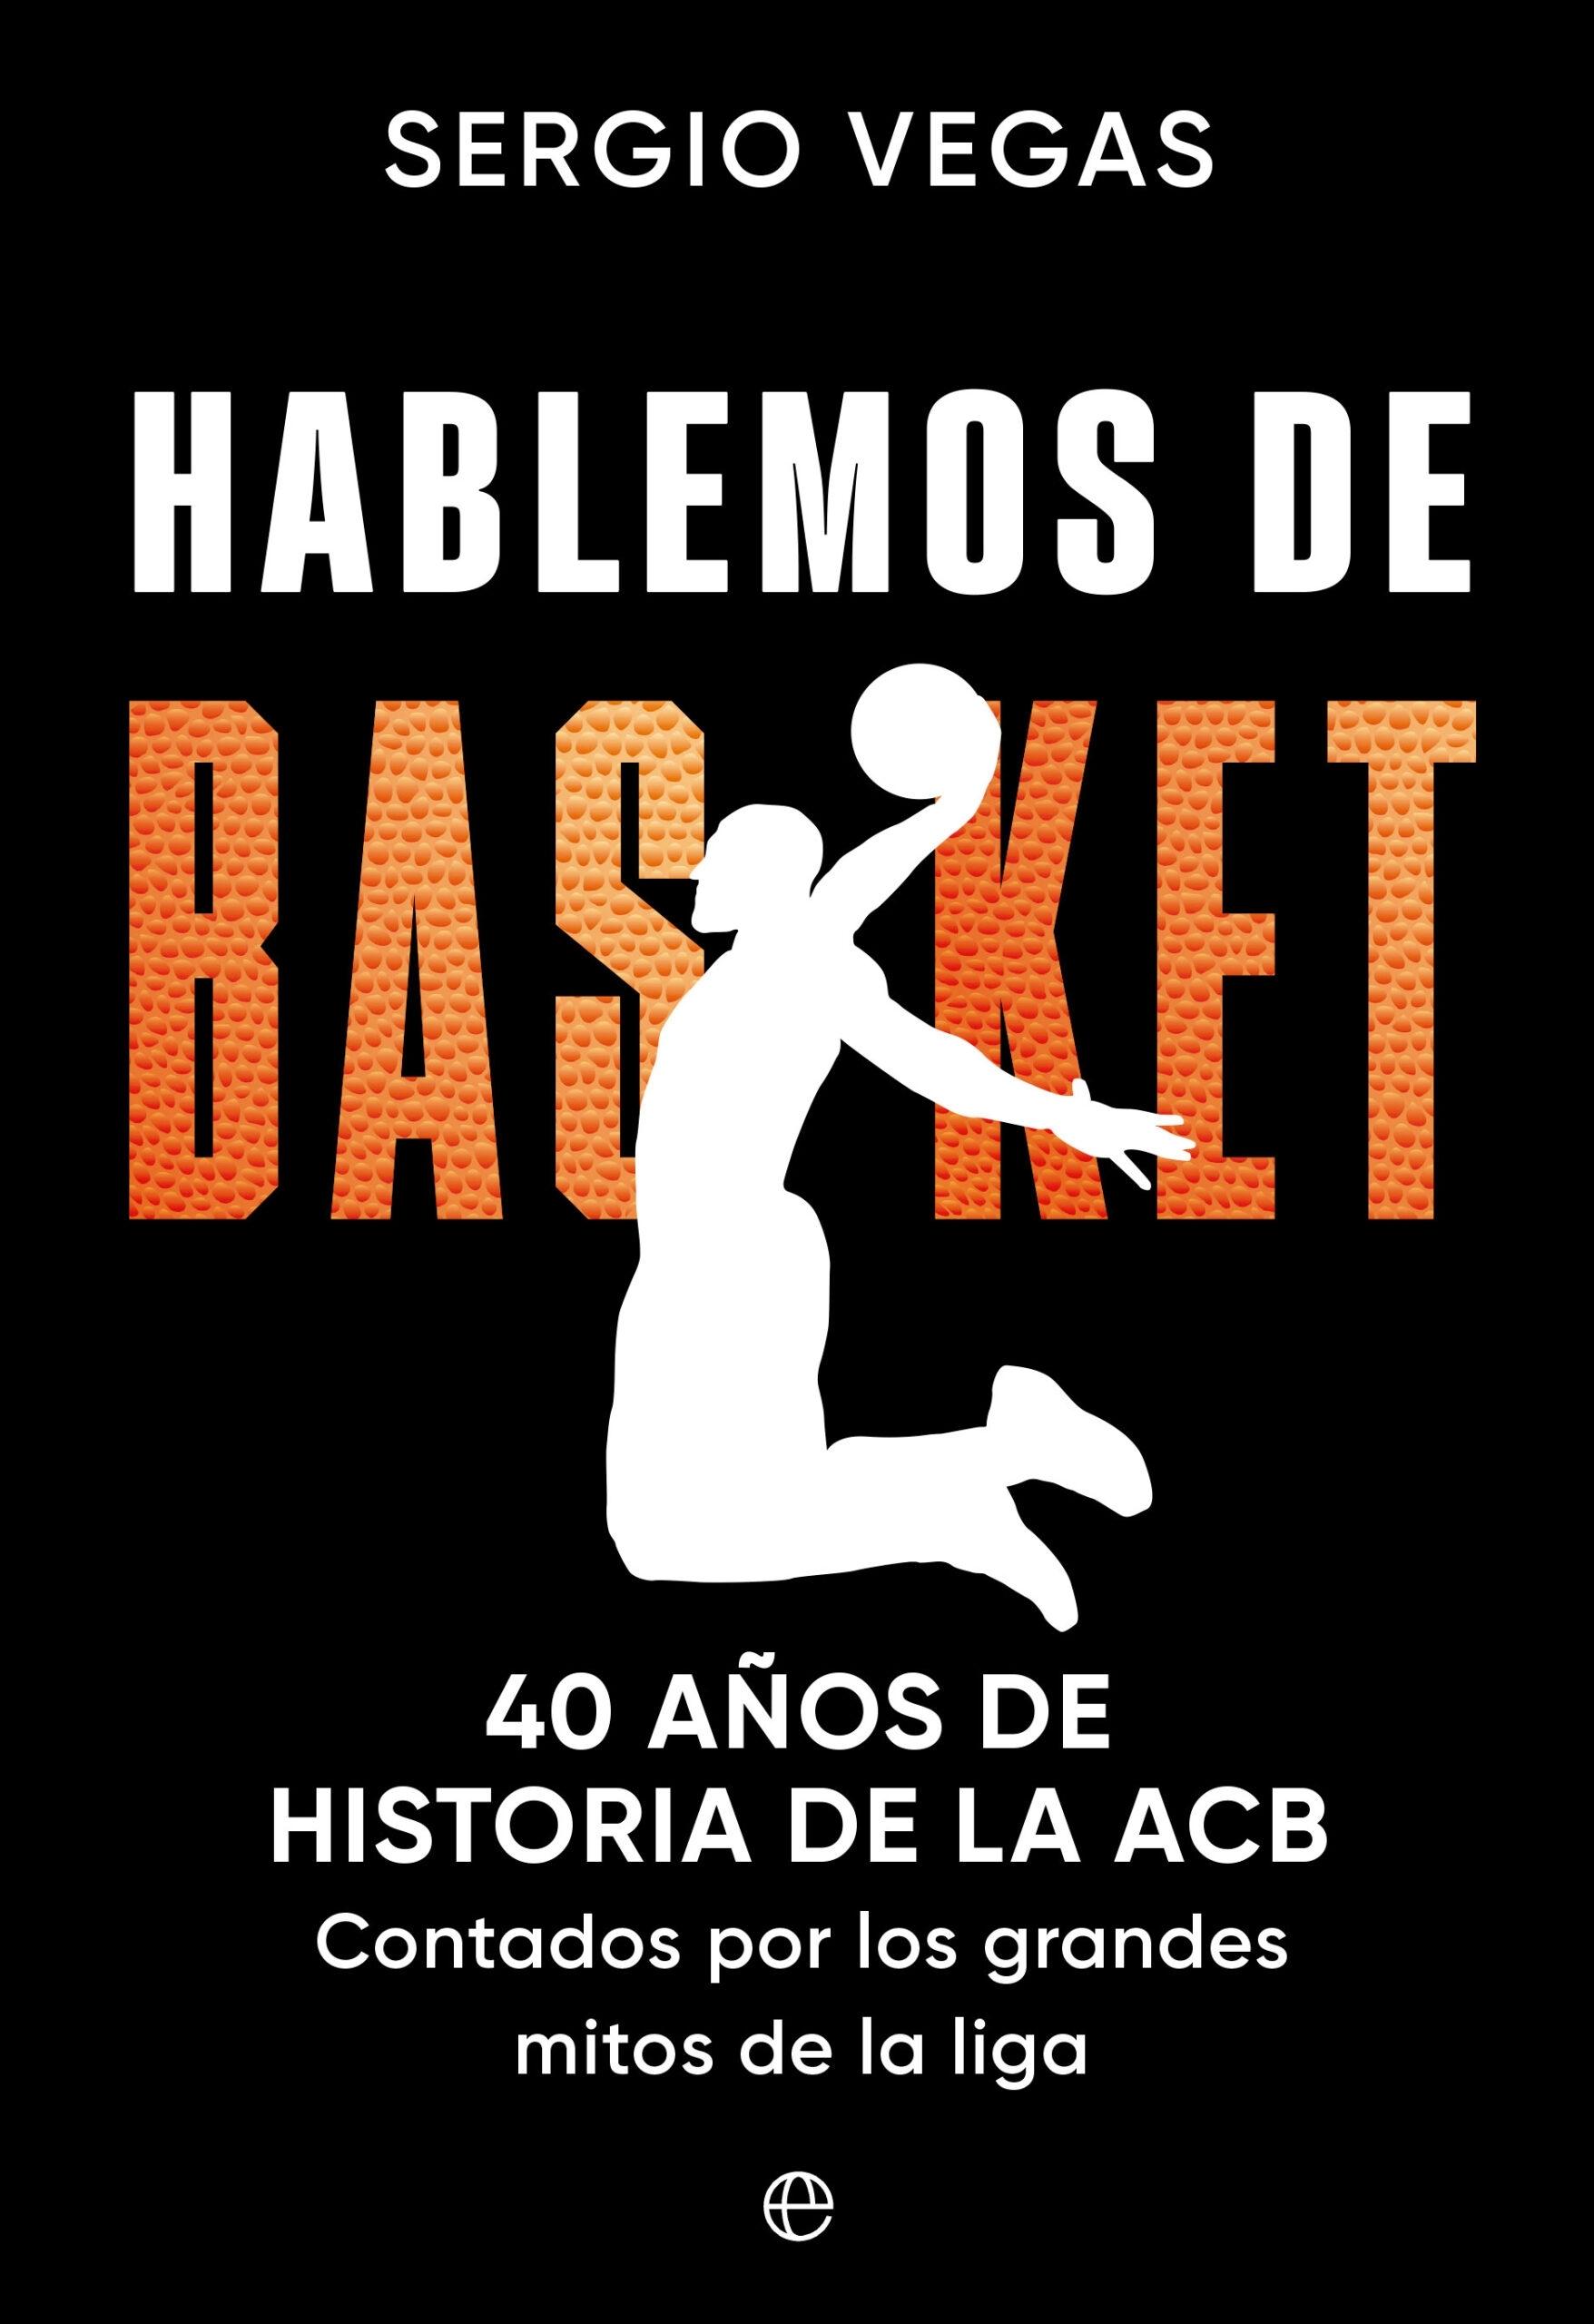 Hablemos de Basket "40 Años de Historia de la Acb Contados por los Grandes Mitos de la Liga"